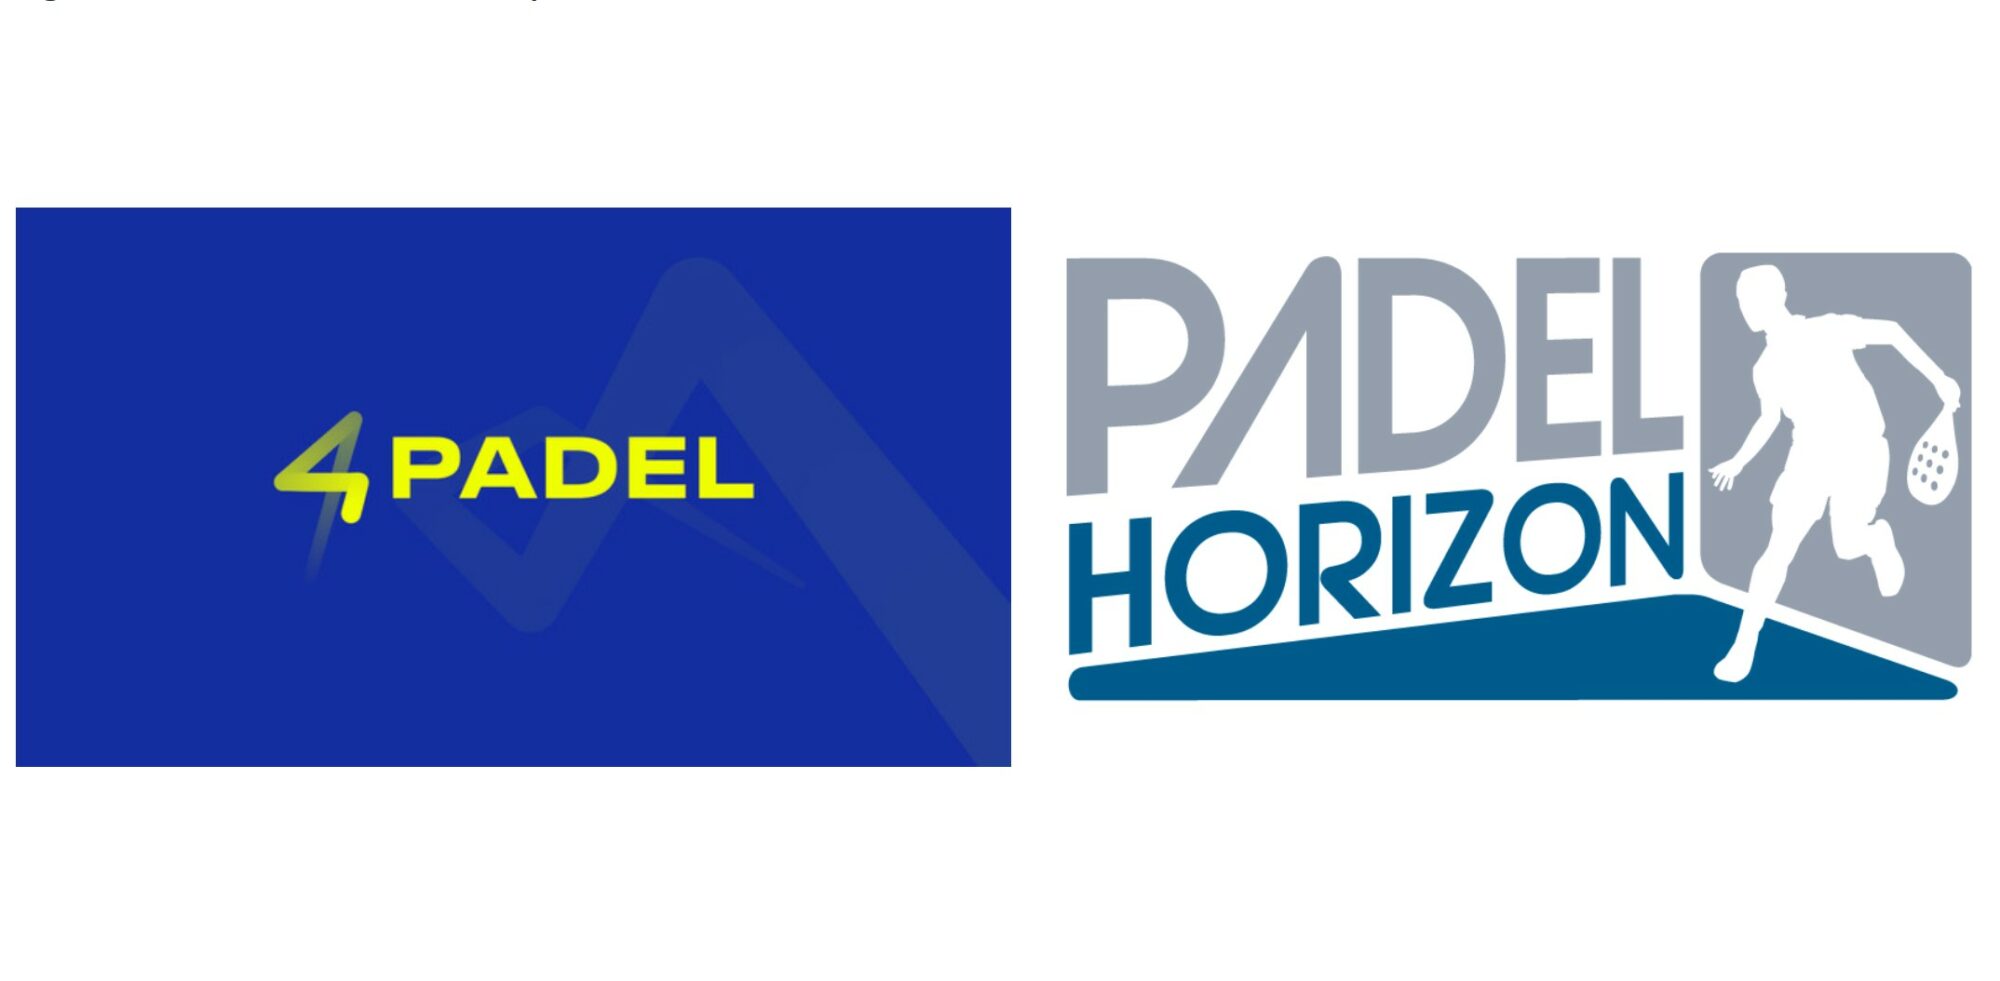 4PADEL Créteil da la bienvenida Padel horizonte